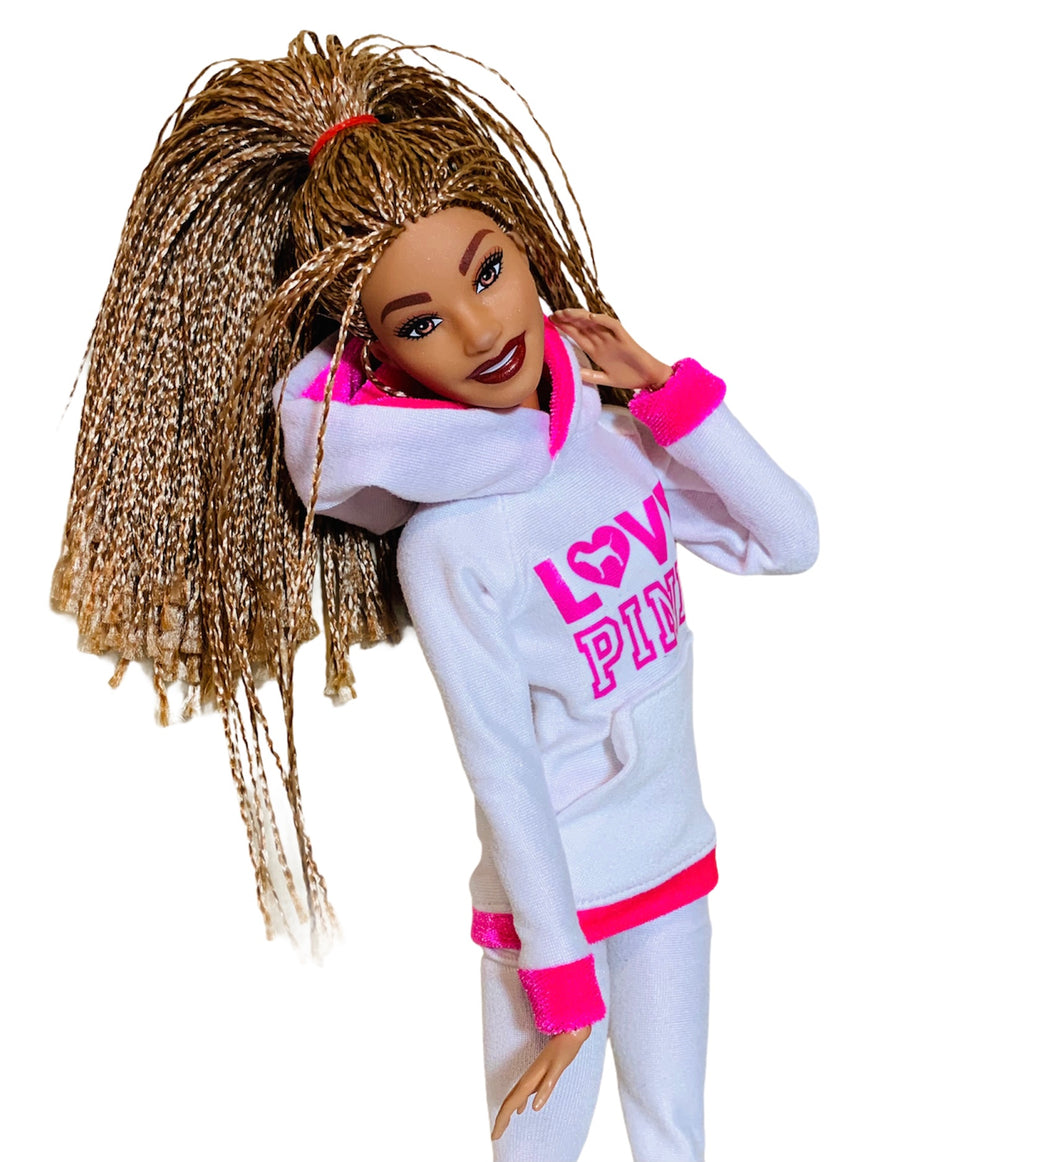 Barbie doll leggings hoodie not included